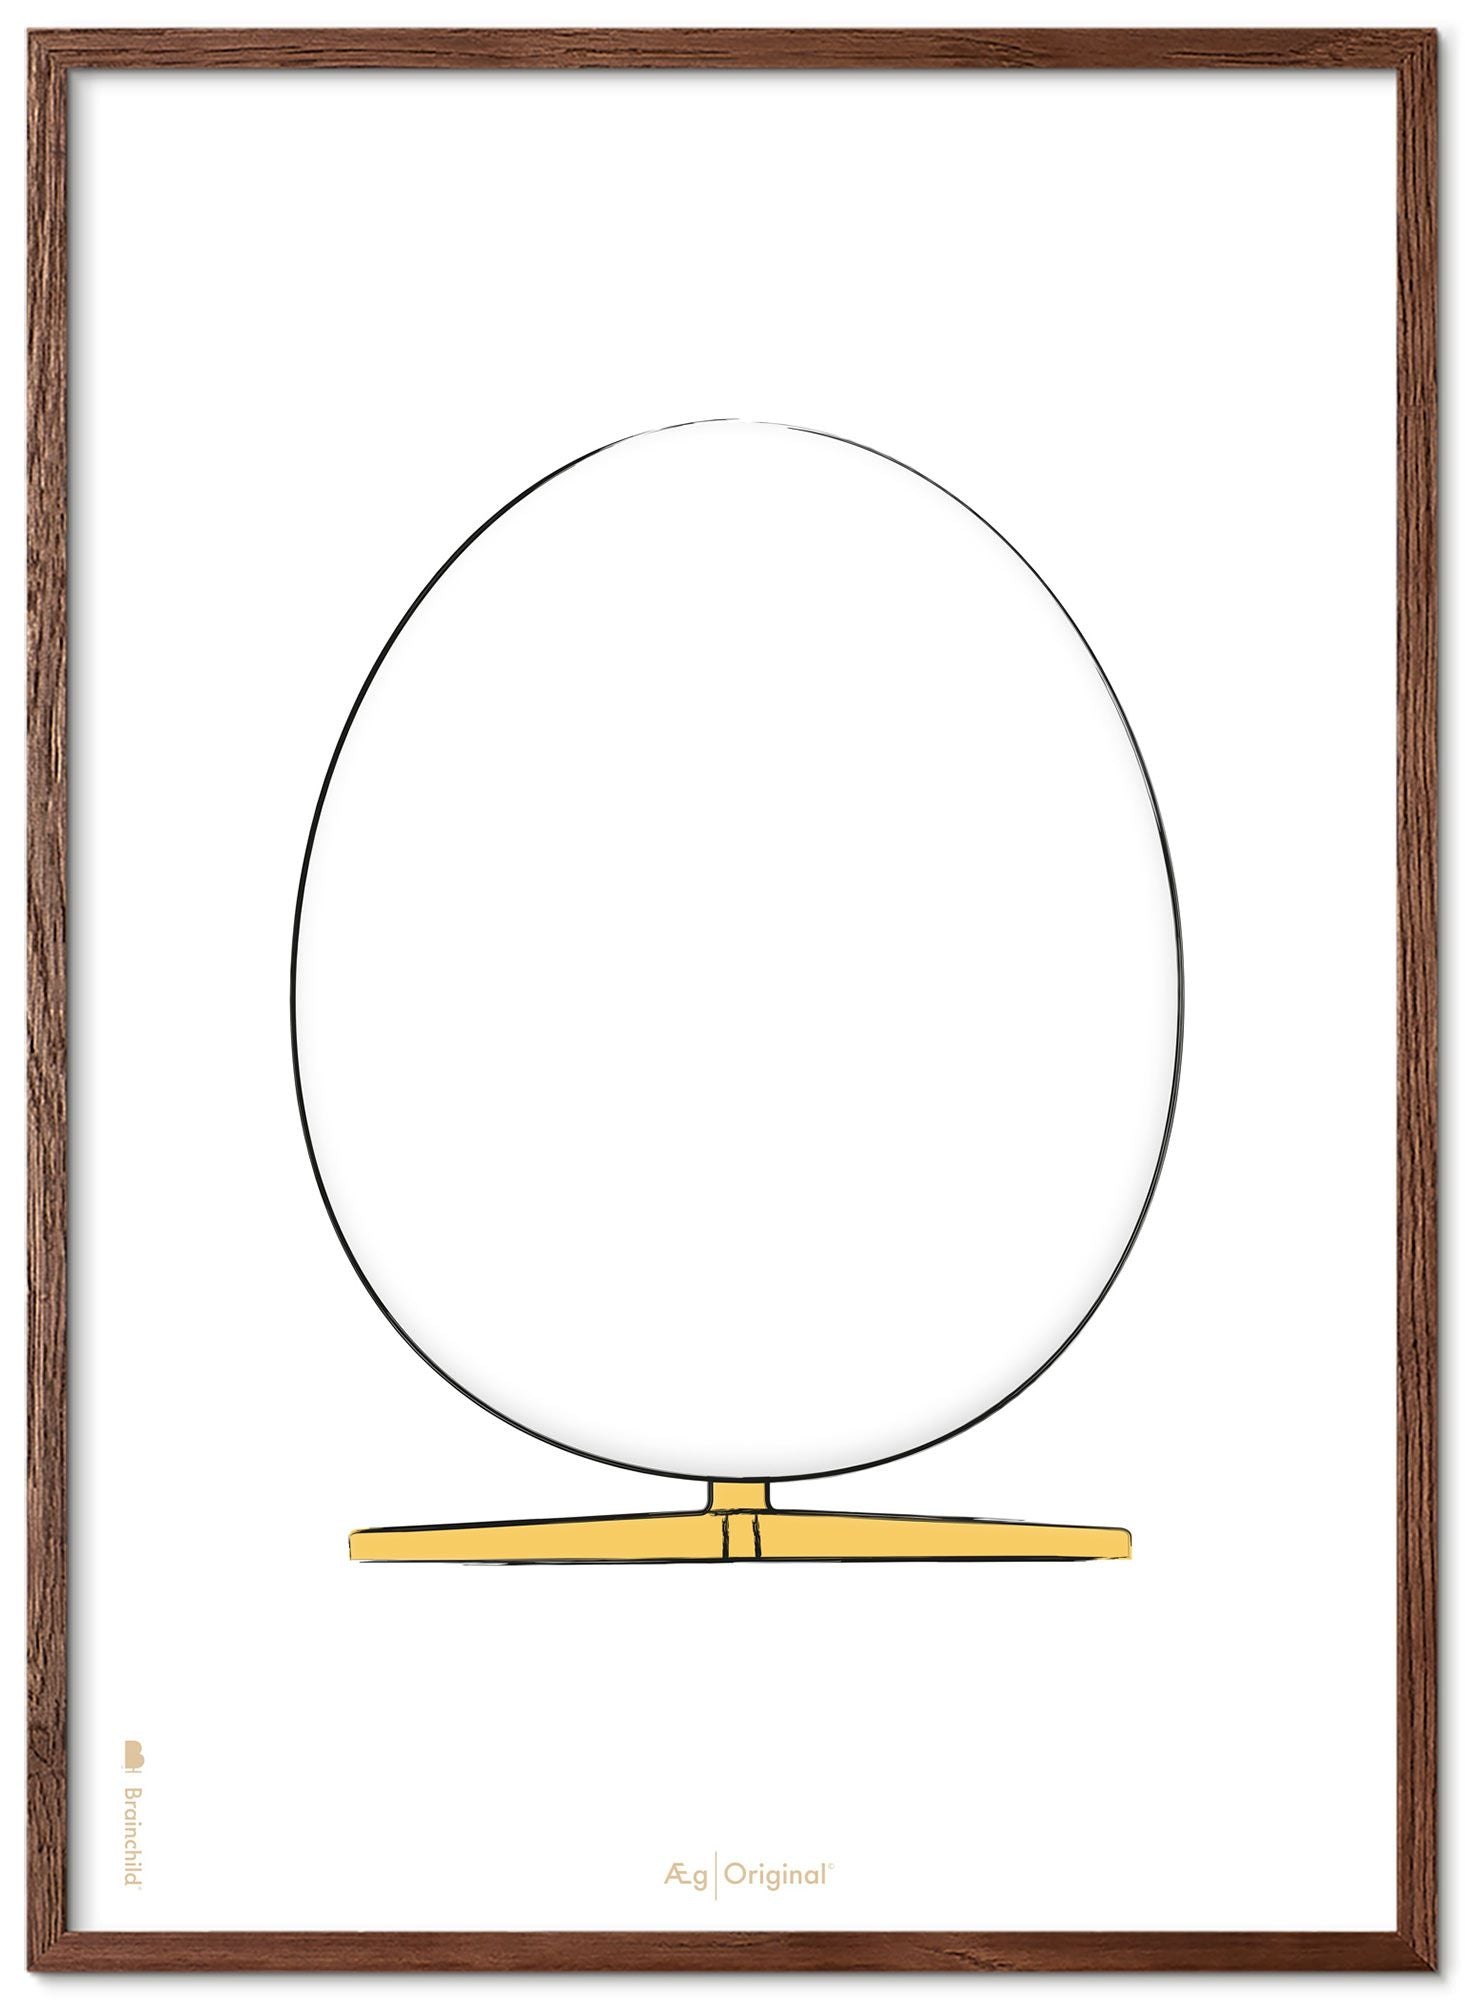 Prepare el marco de póster de boceto de diseño de huevo hecho de madera oscura 50x70 cm, fondo blanco